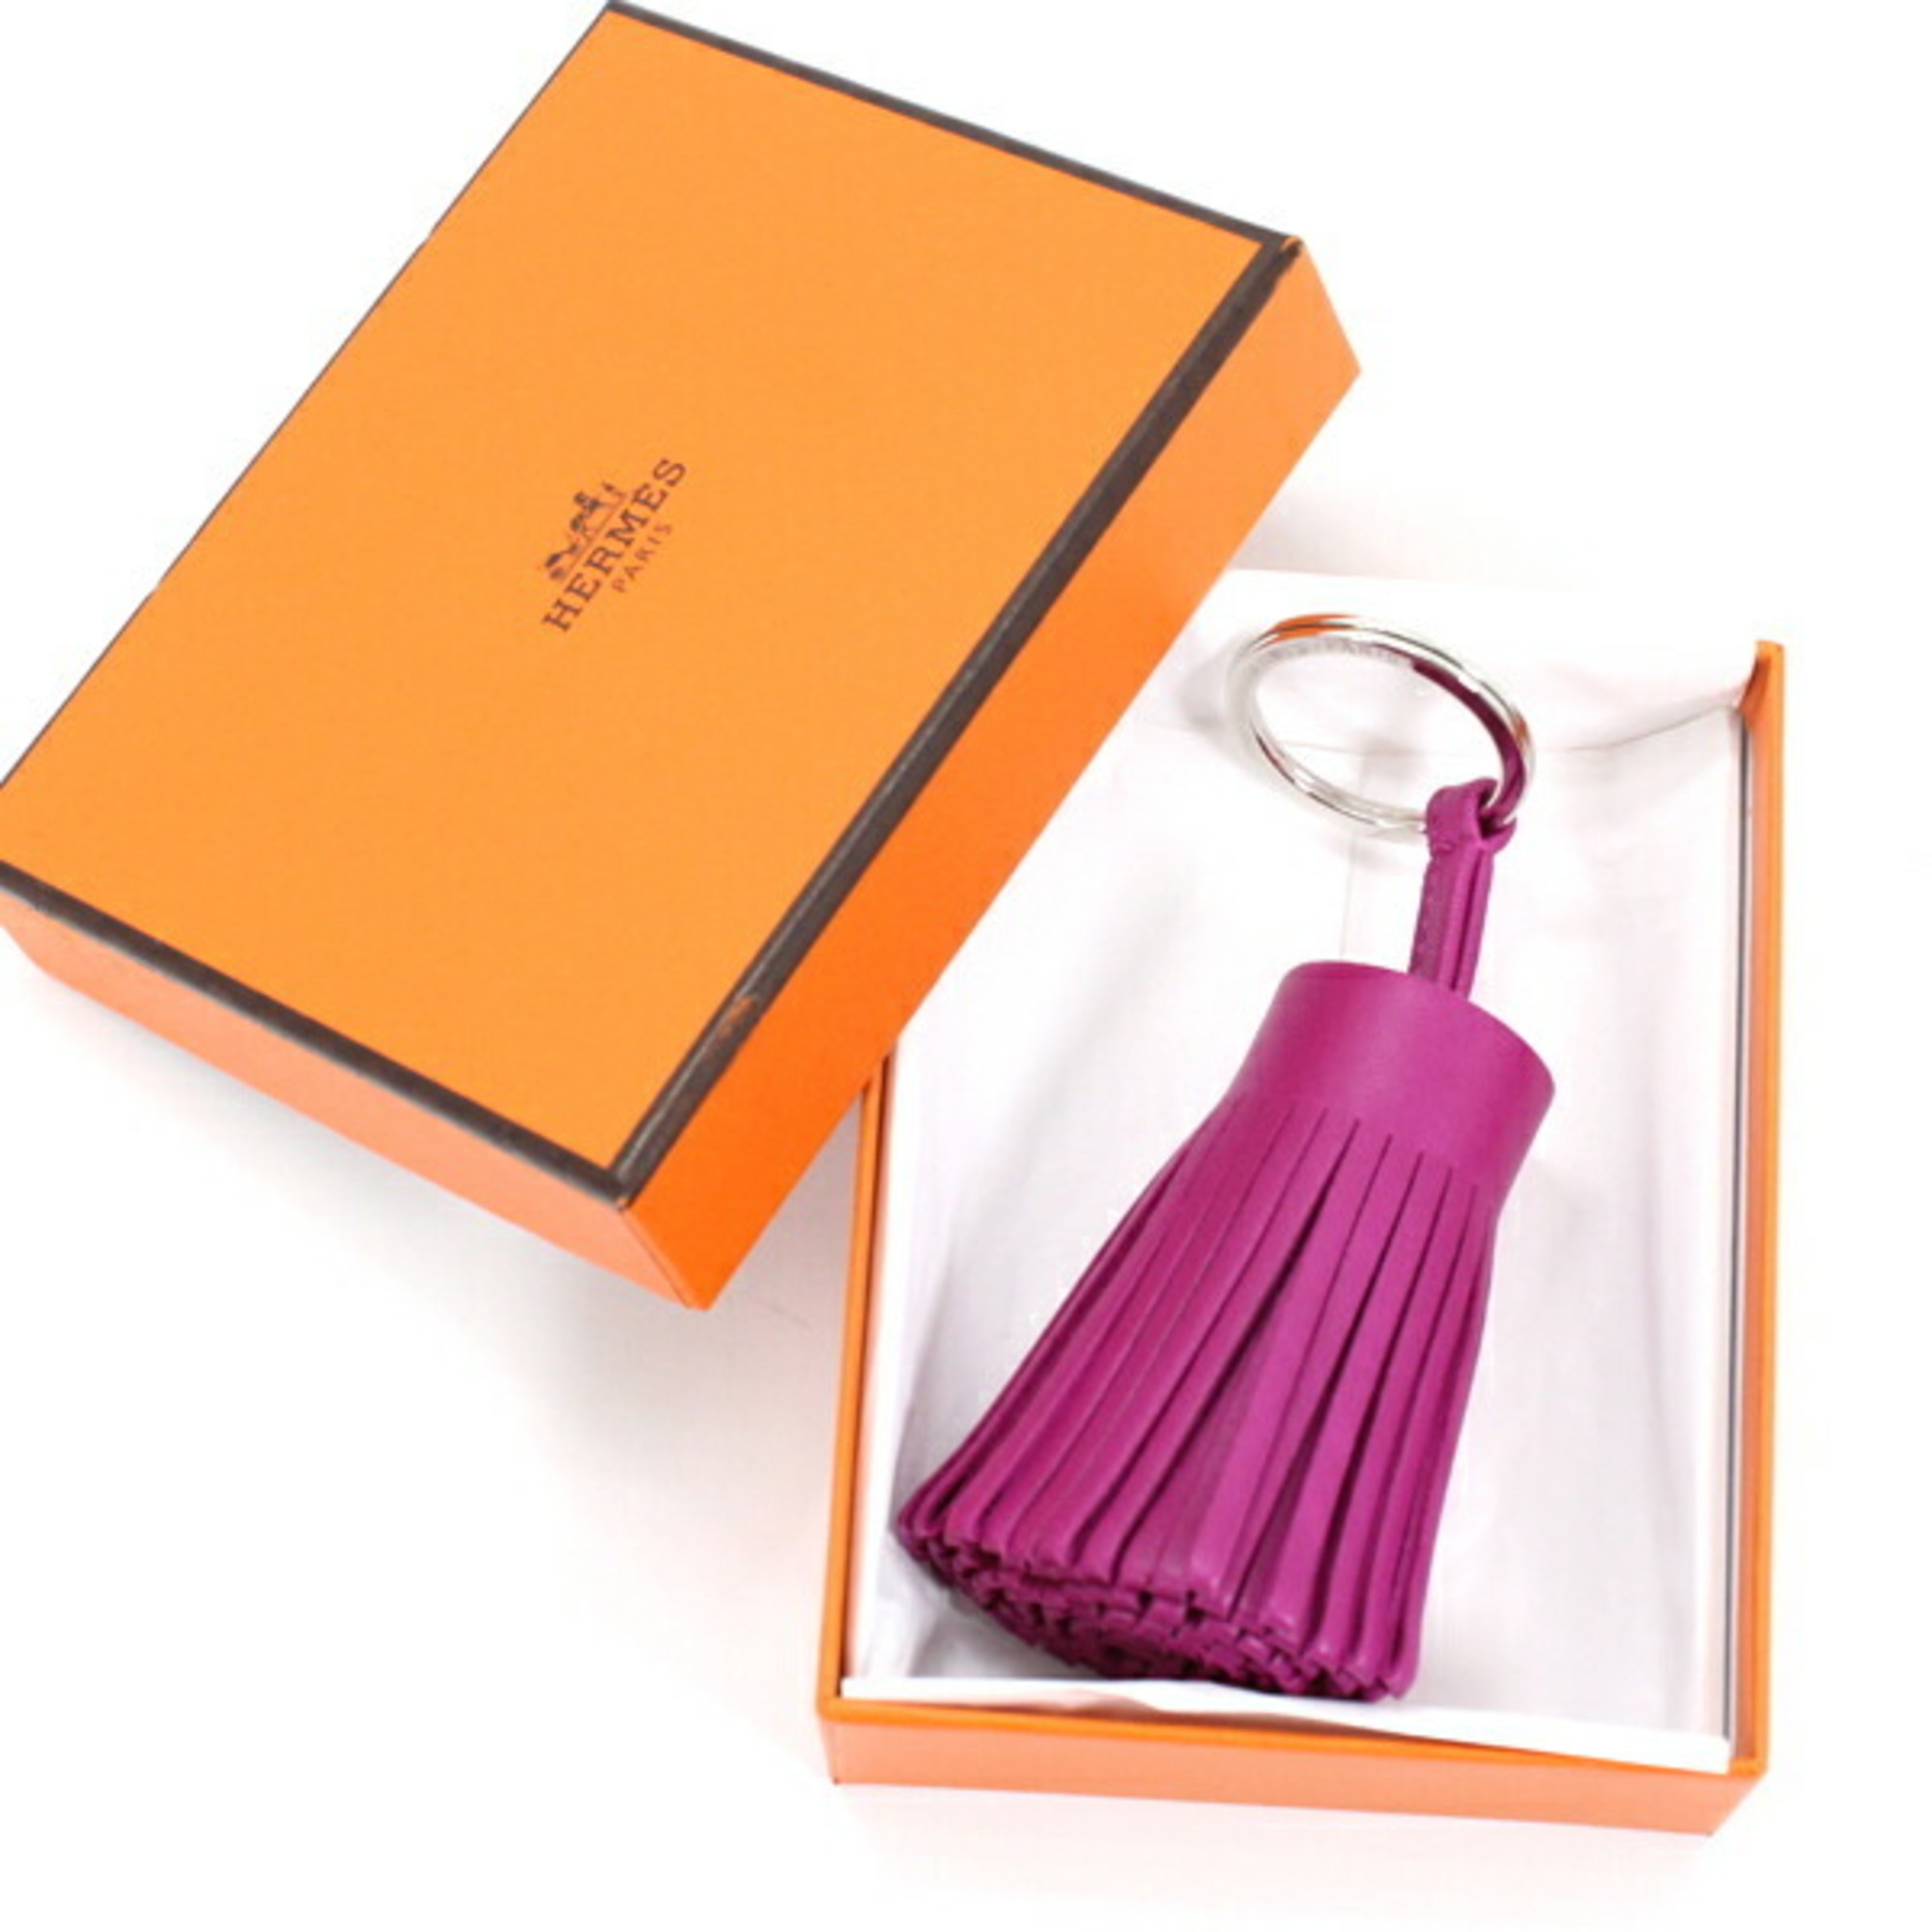 Hermes Keychain Bag Charm Carmen Lambskin Rose Purple Tassel Keyring HERMES T4165